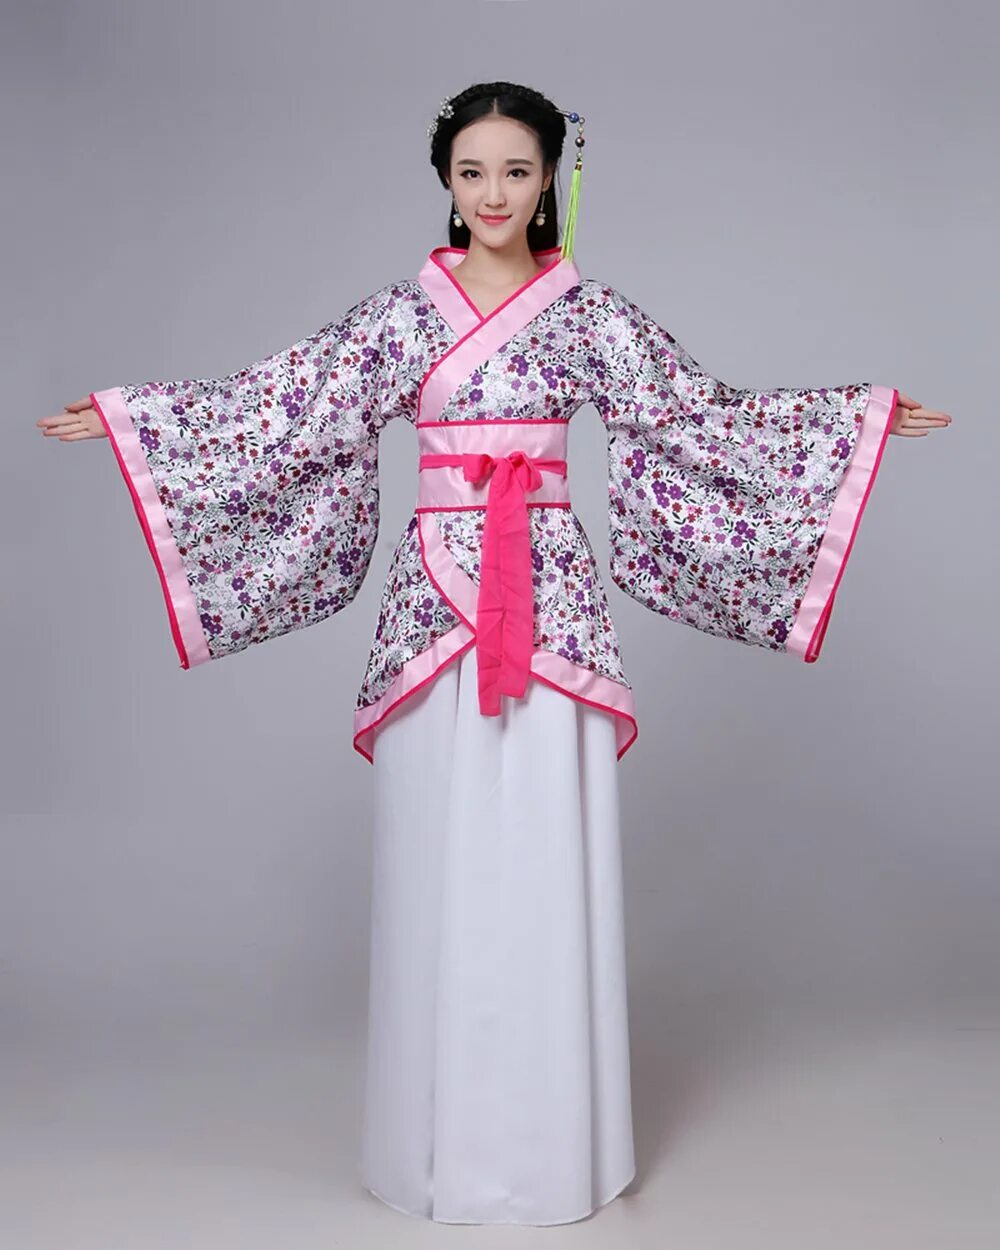 Ханьфу династии Тан. Китайский национальный костюм Ханьфу. Ханьфу династии Вэй. Ханьфу династии Чжоу.